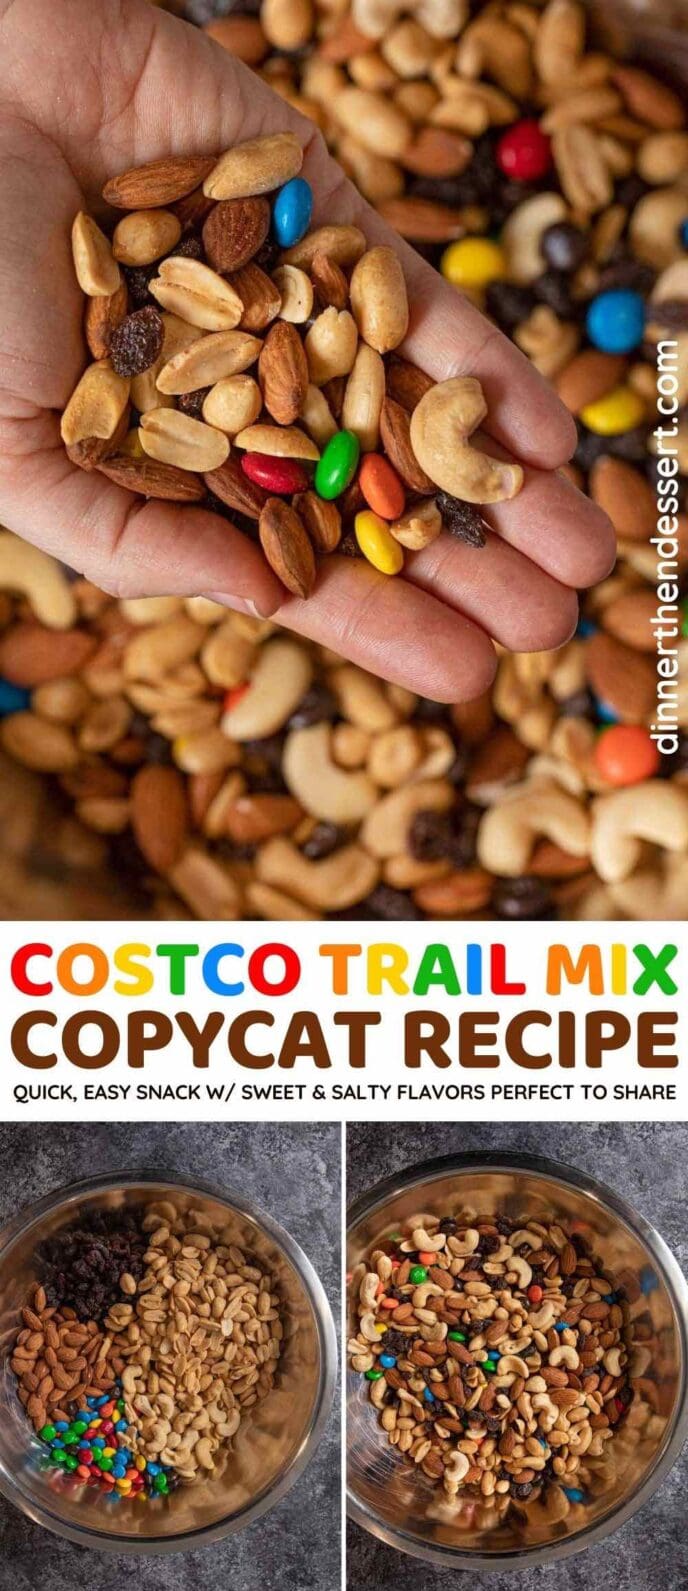 Costco Trail Mix collage